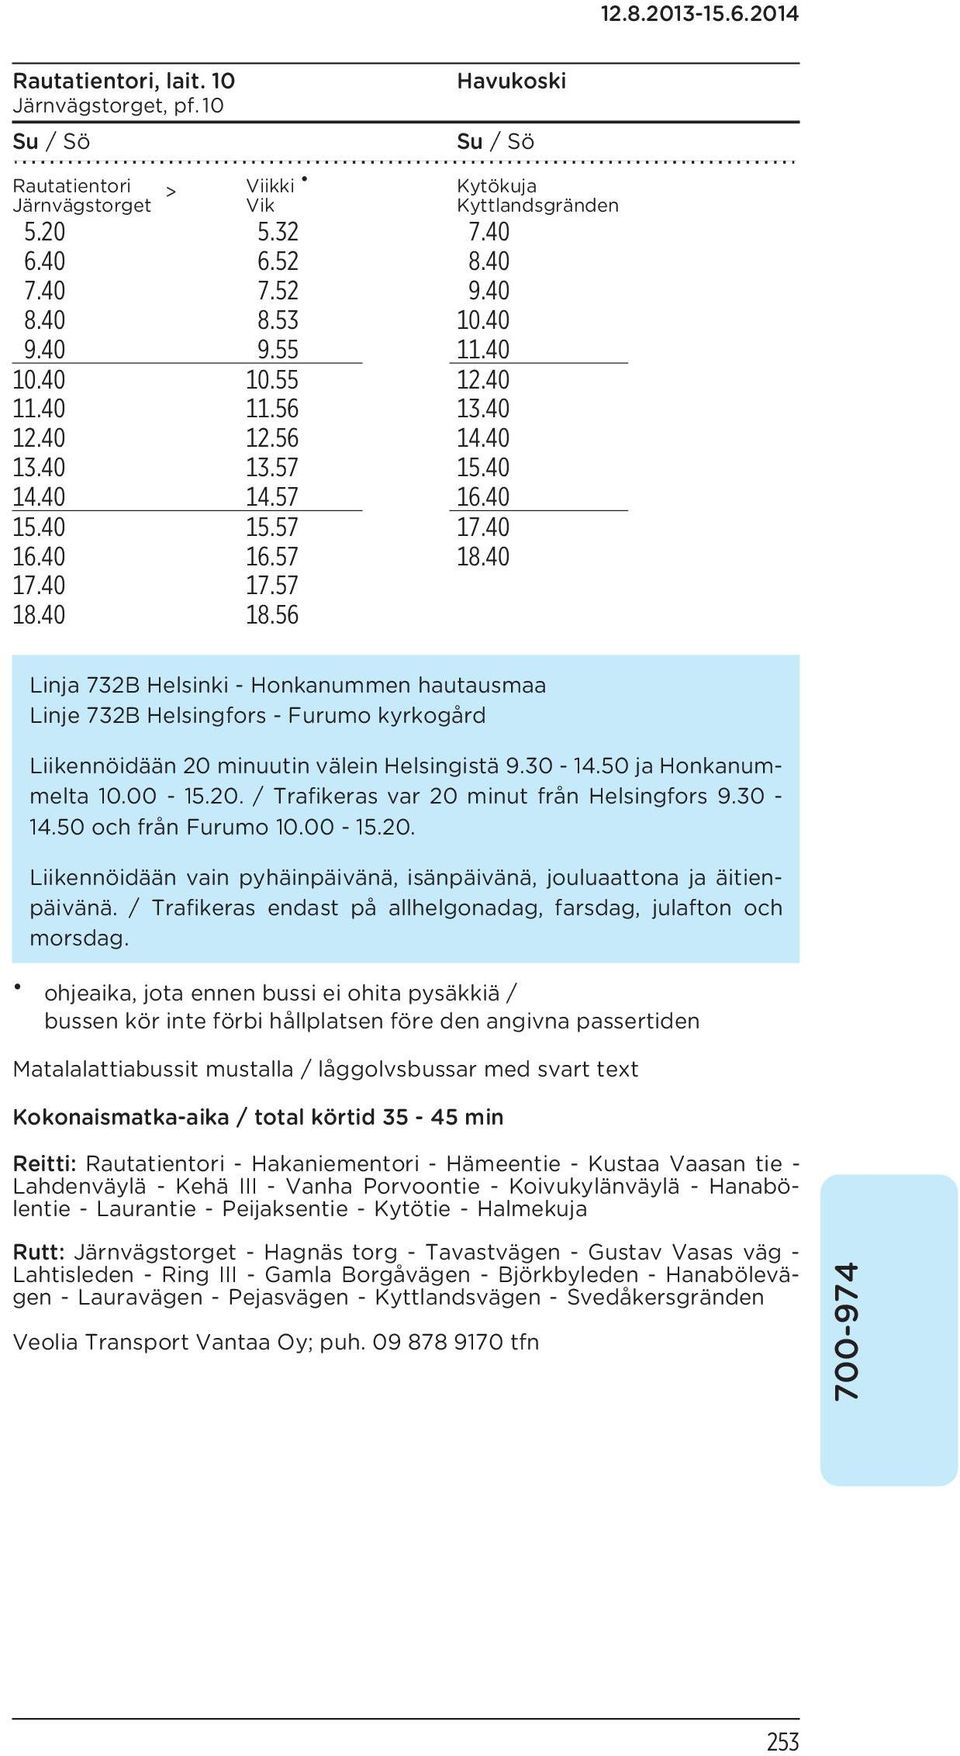 56 Kytökuja Kyttlandsgränden Linja 732B Helsinki - Honkanummen hautausmaa Linje 732B Helsingfors - Furumo kyrkogård Liikennöidään 20 minuutin välein Helsingistä 9.30-14.50 ja Honkanummelta 10.00-15.